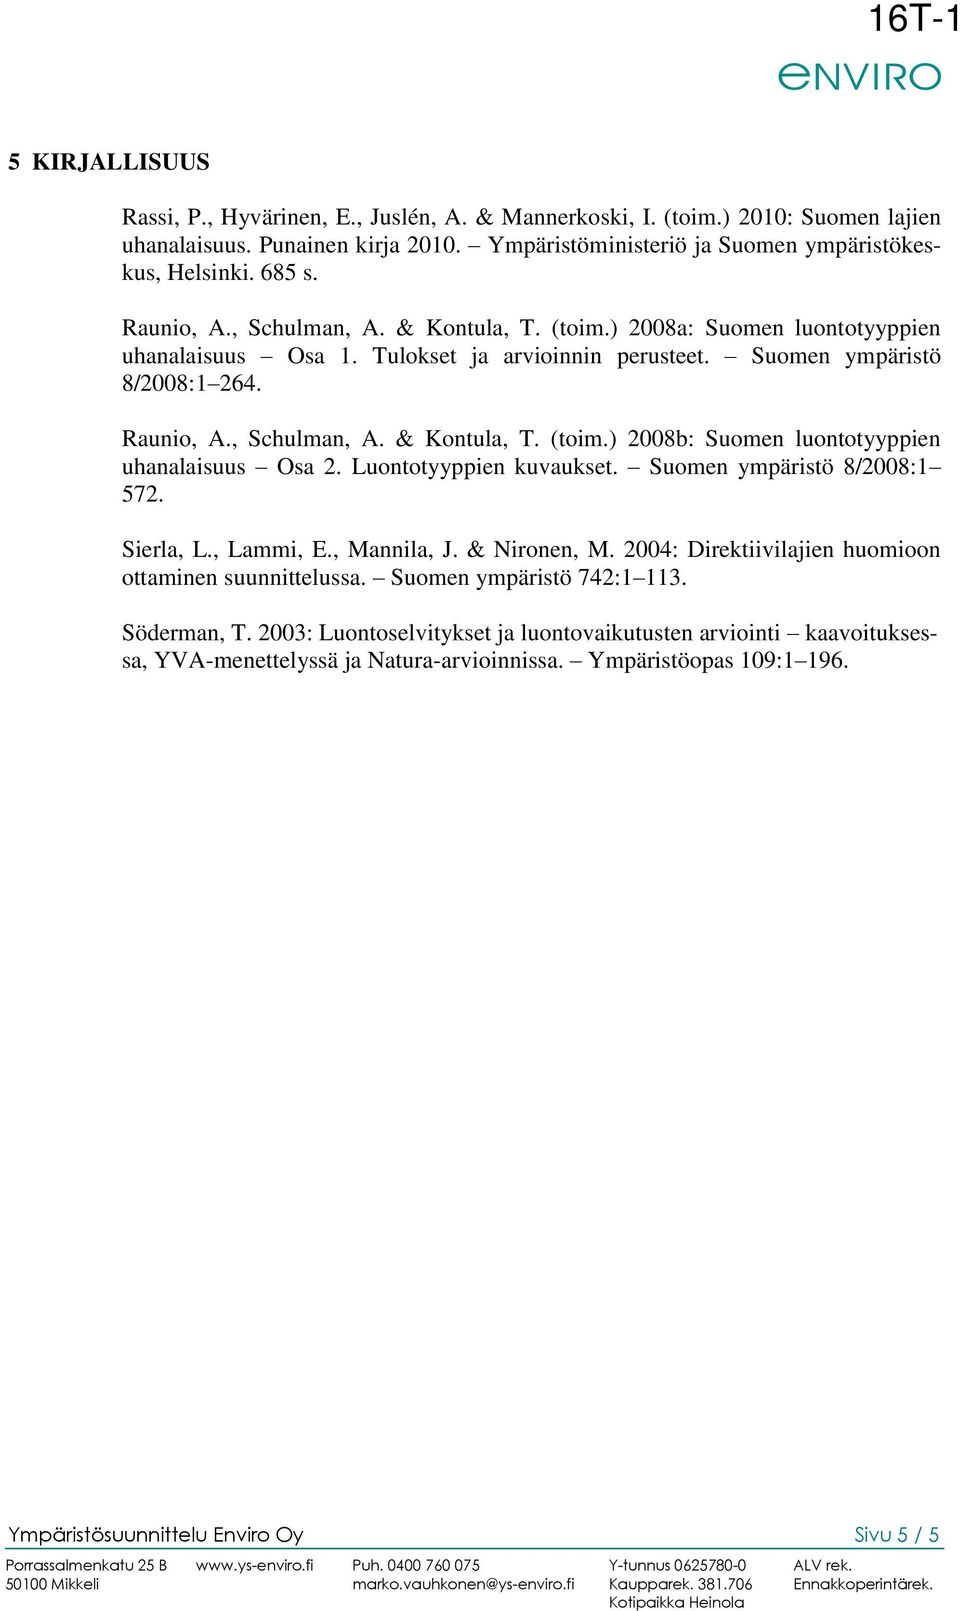 Luontotyyppien kuvaukset. Suomen ympäristö 8/2008:1 572. Sierla, L., Lammi, E., Mannila, J. & Nironen, M. 2004: Direktiivilajien huomioon ottaminen suunnittelussa. Suomen ympäristö 742:1 113.